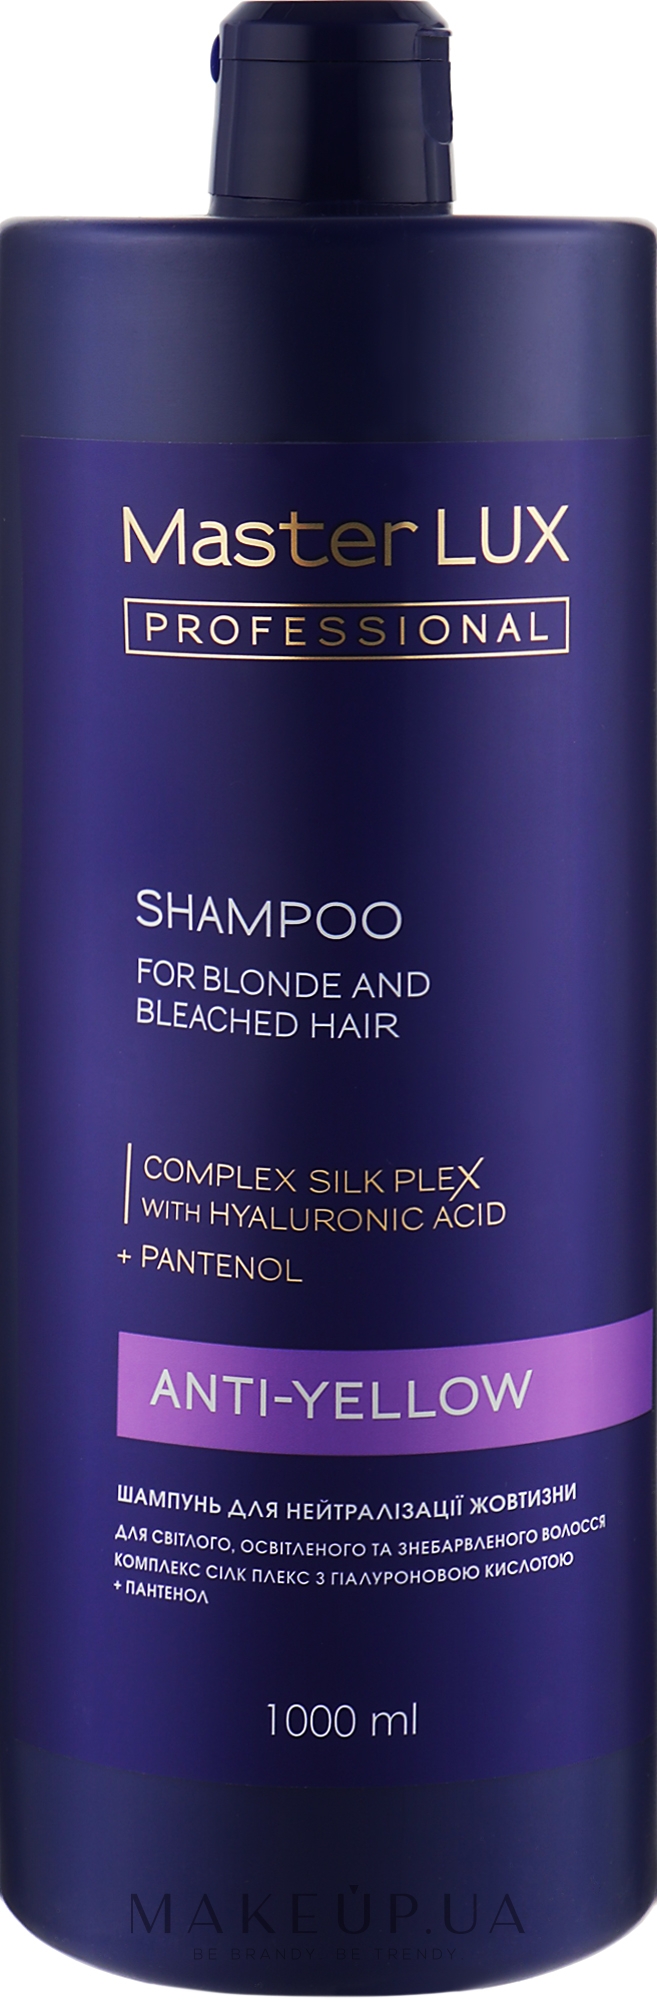 Шампунь для нейтралізації жовтизни - Master LUX Professional Anti-Yellow Shampoo — фото 1000ml